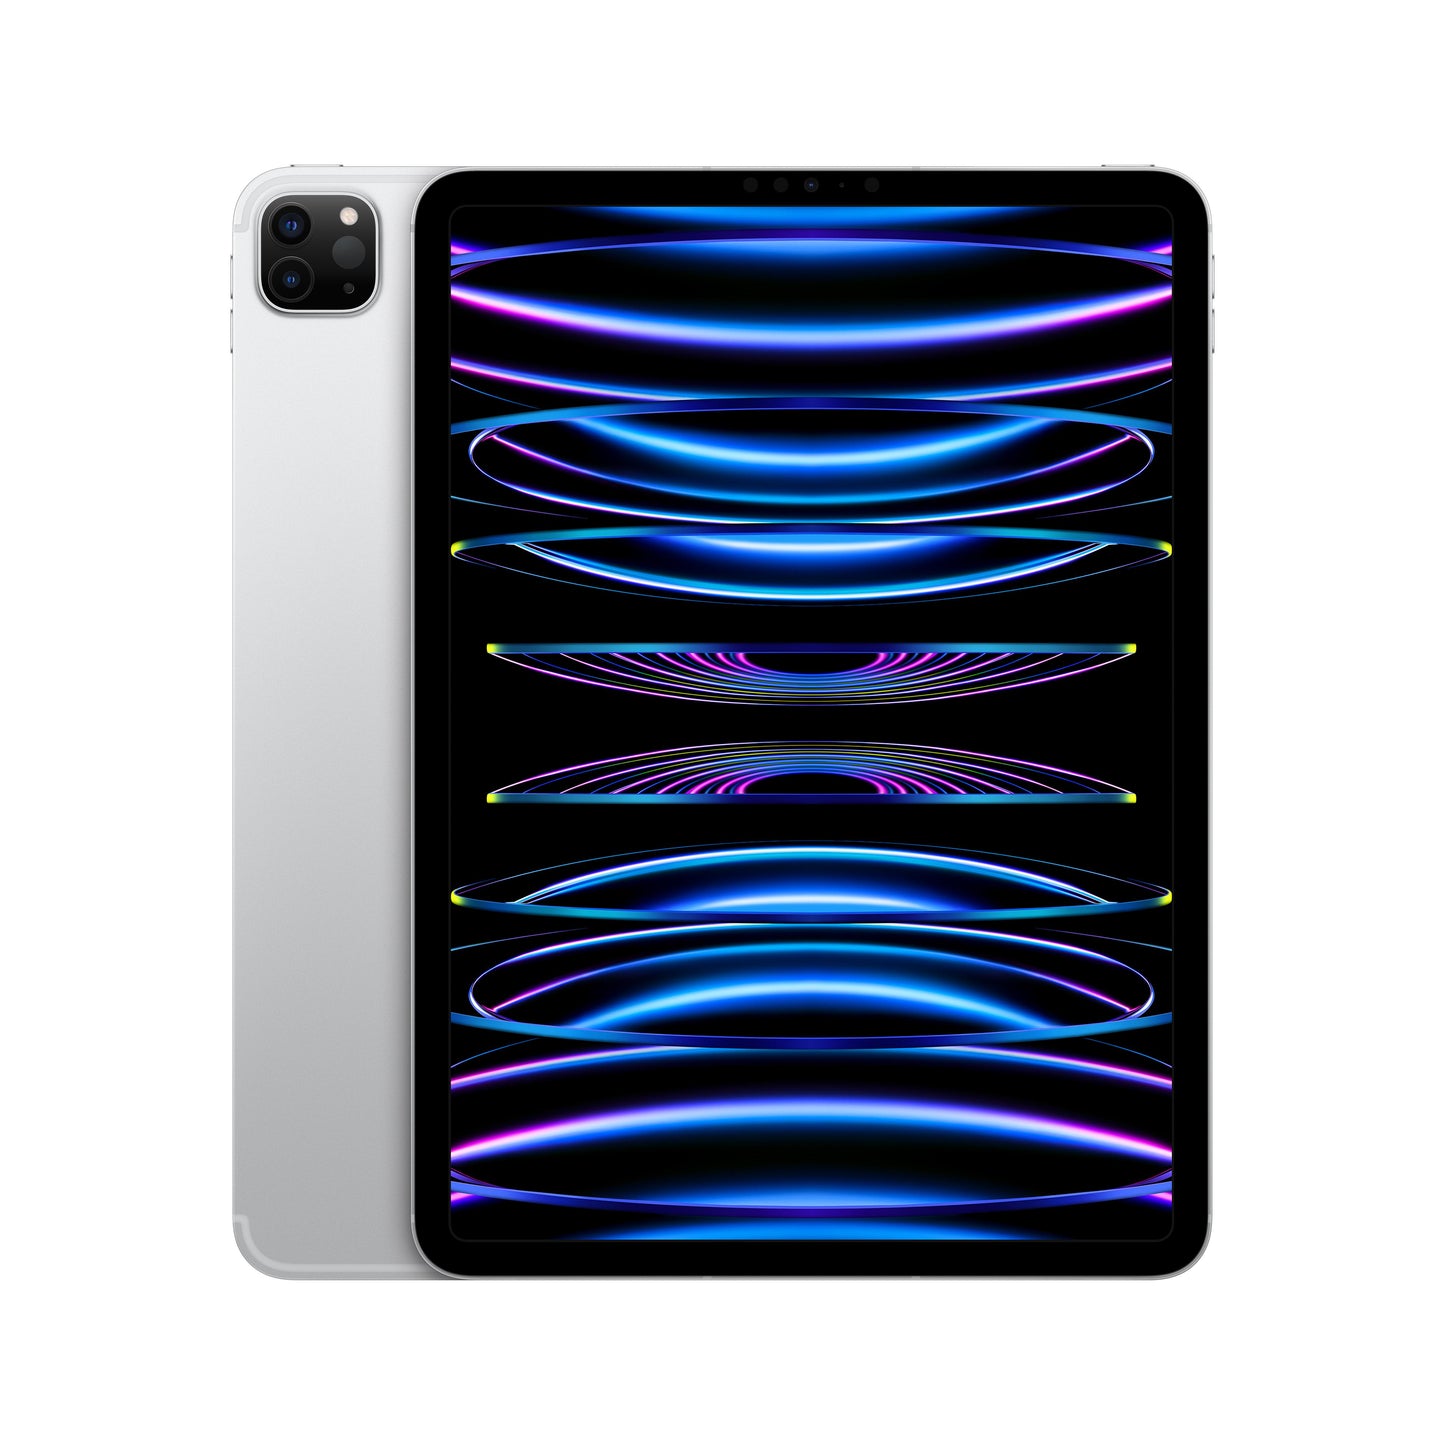 11-inch iPad Pro (4th Gen) Wi-Fi + Cellular 256GB - Silver